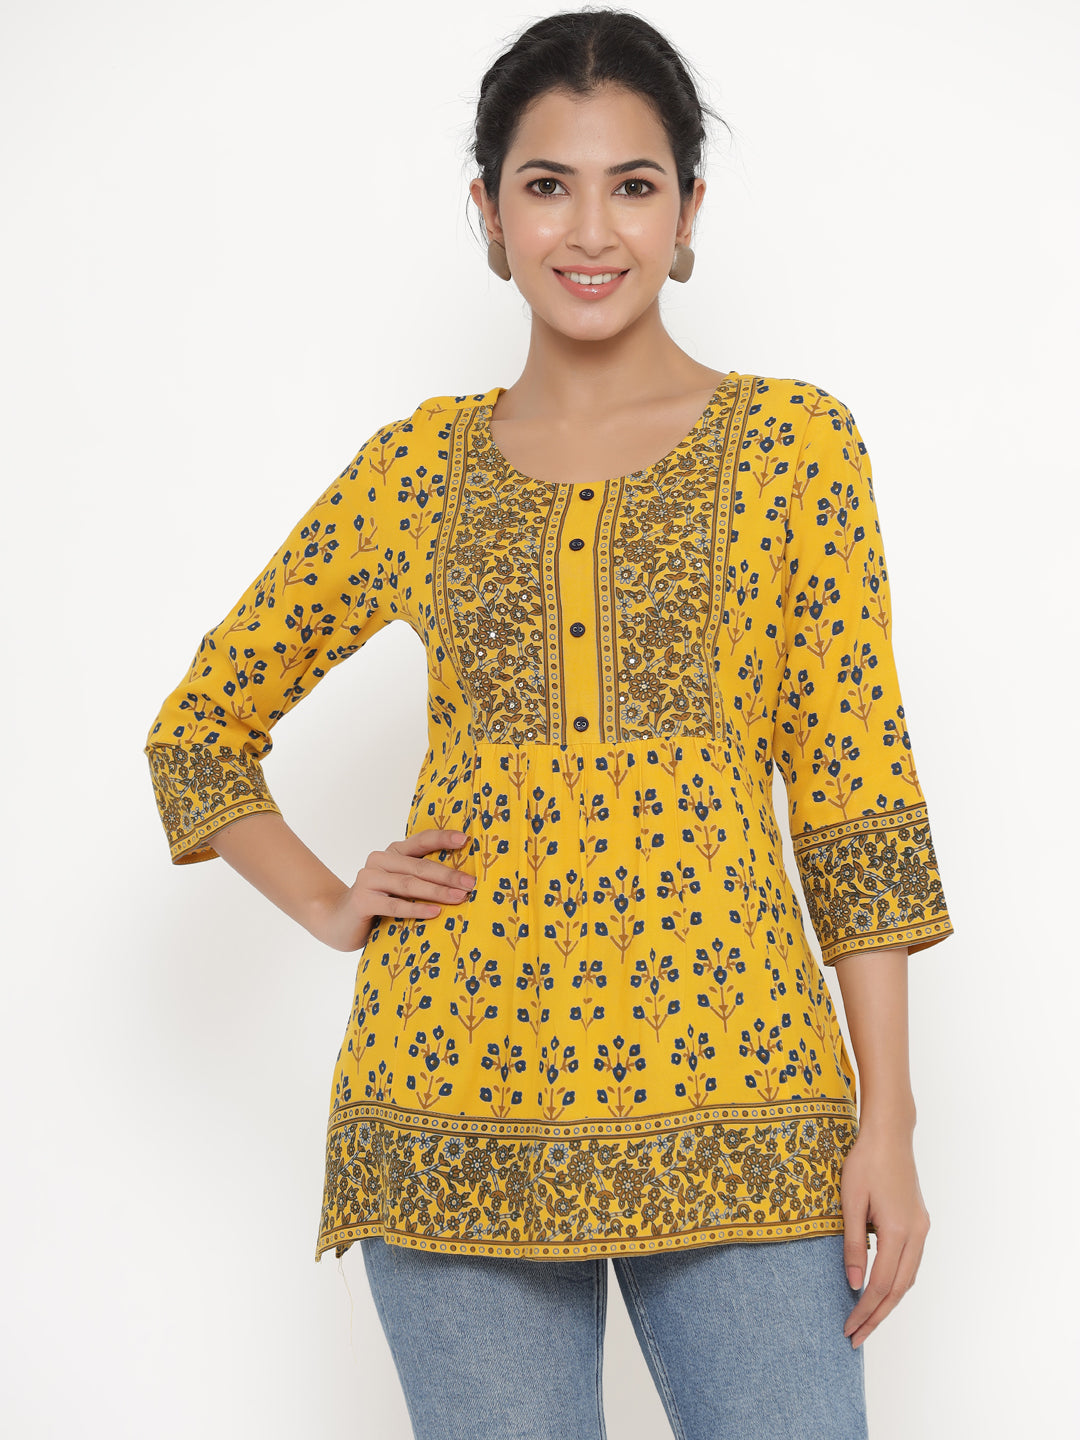 Women's Self Desgin Rayon Fabric Short Kurta Mustard Color - Kipek